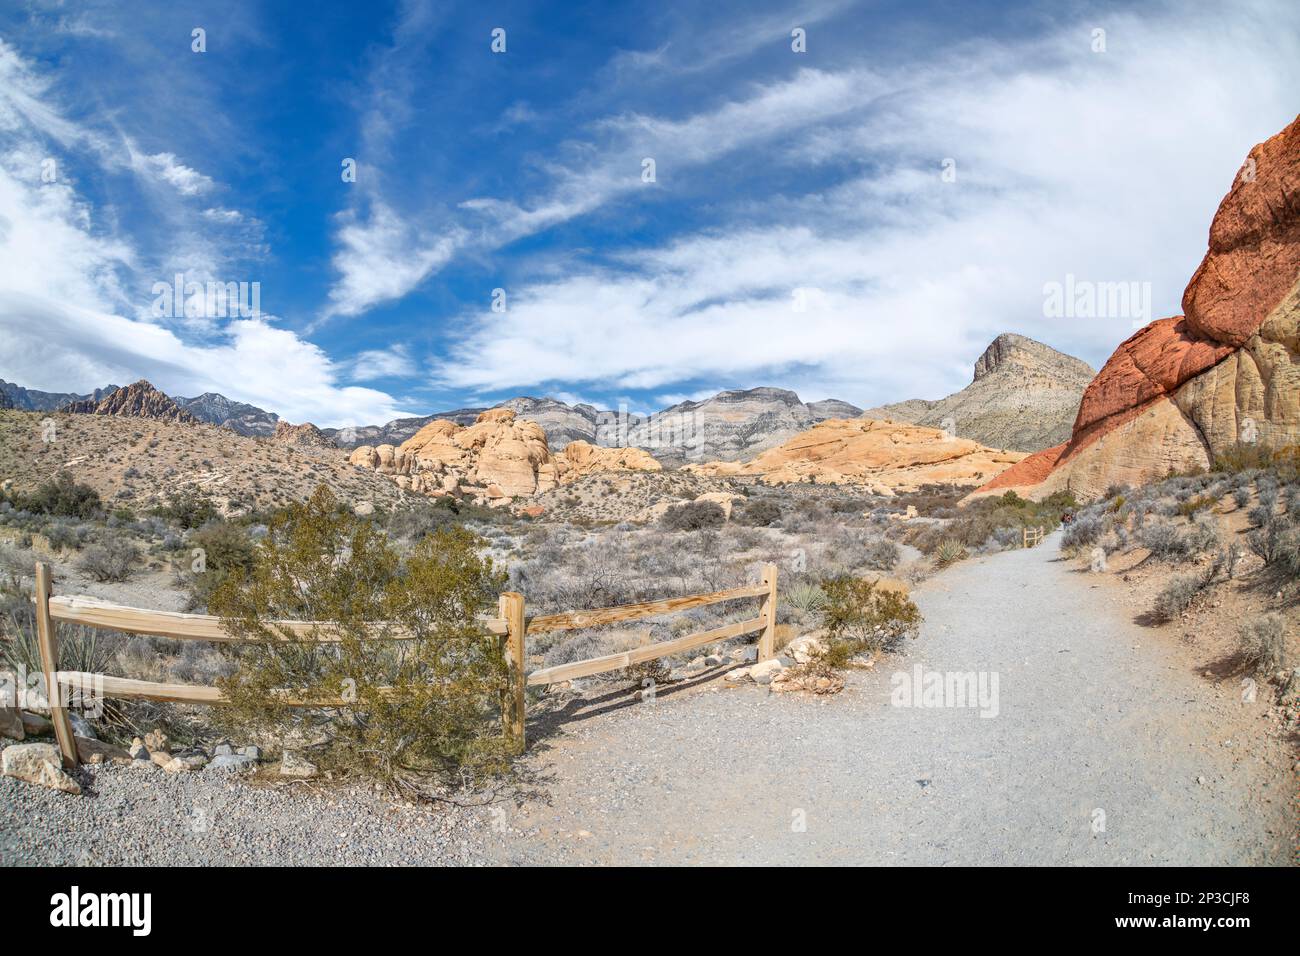 Il sentiero escursionistico che conduce nel profondo cuore del Red Rock Canyon a Las Vegas mostra una giornata vivace per essere attivi e godersi il tempo libero. Foto Stock